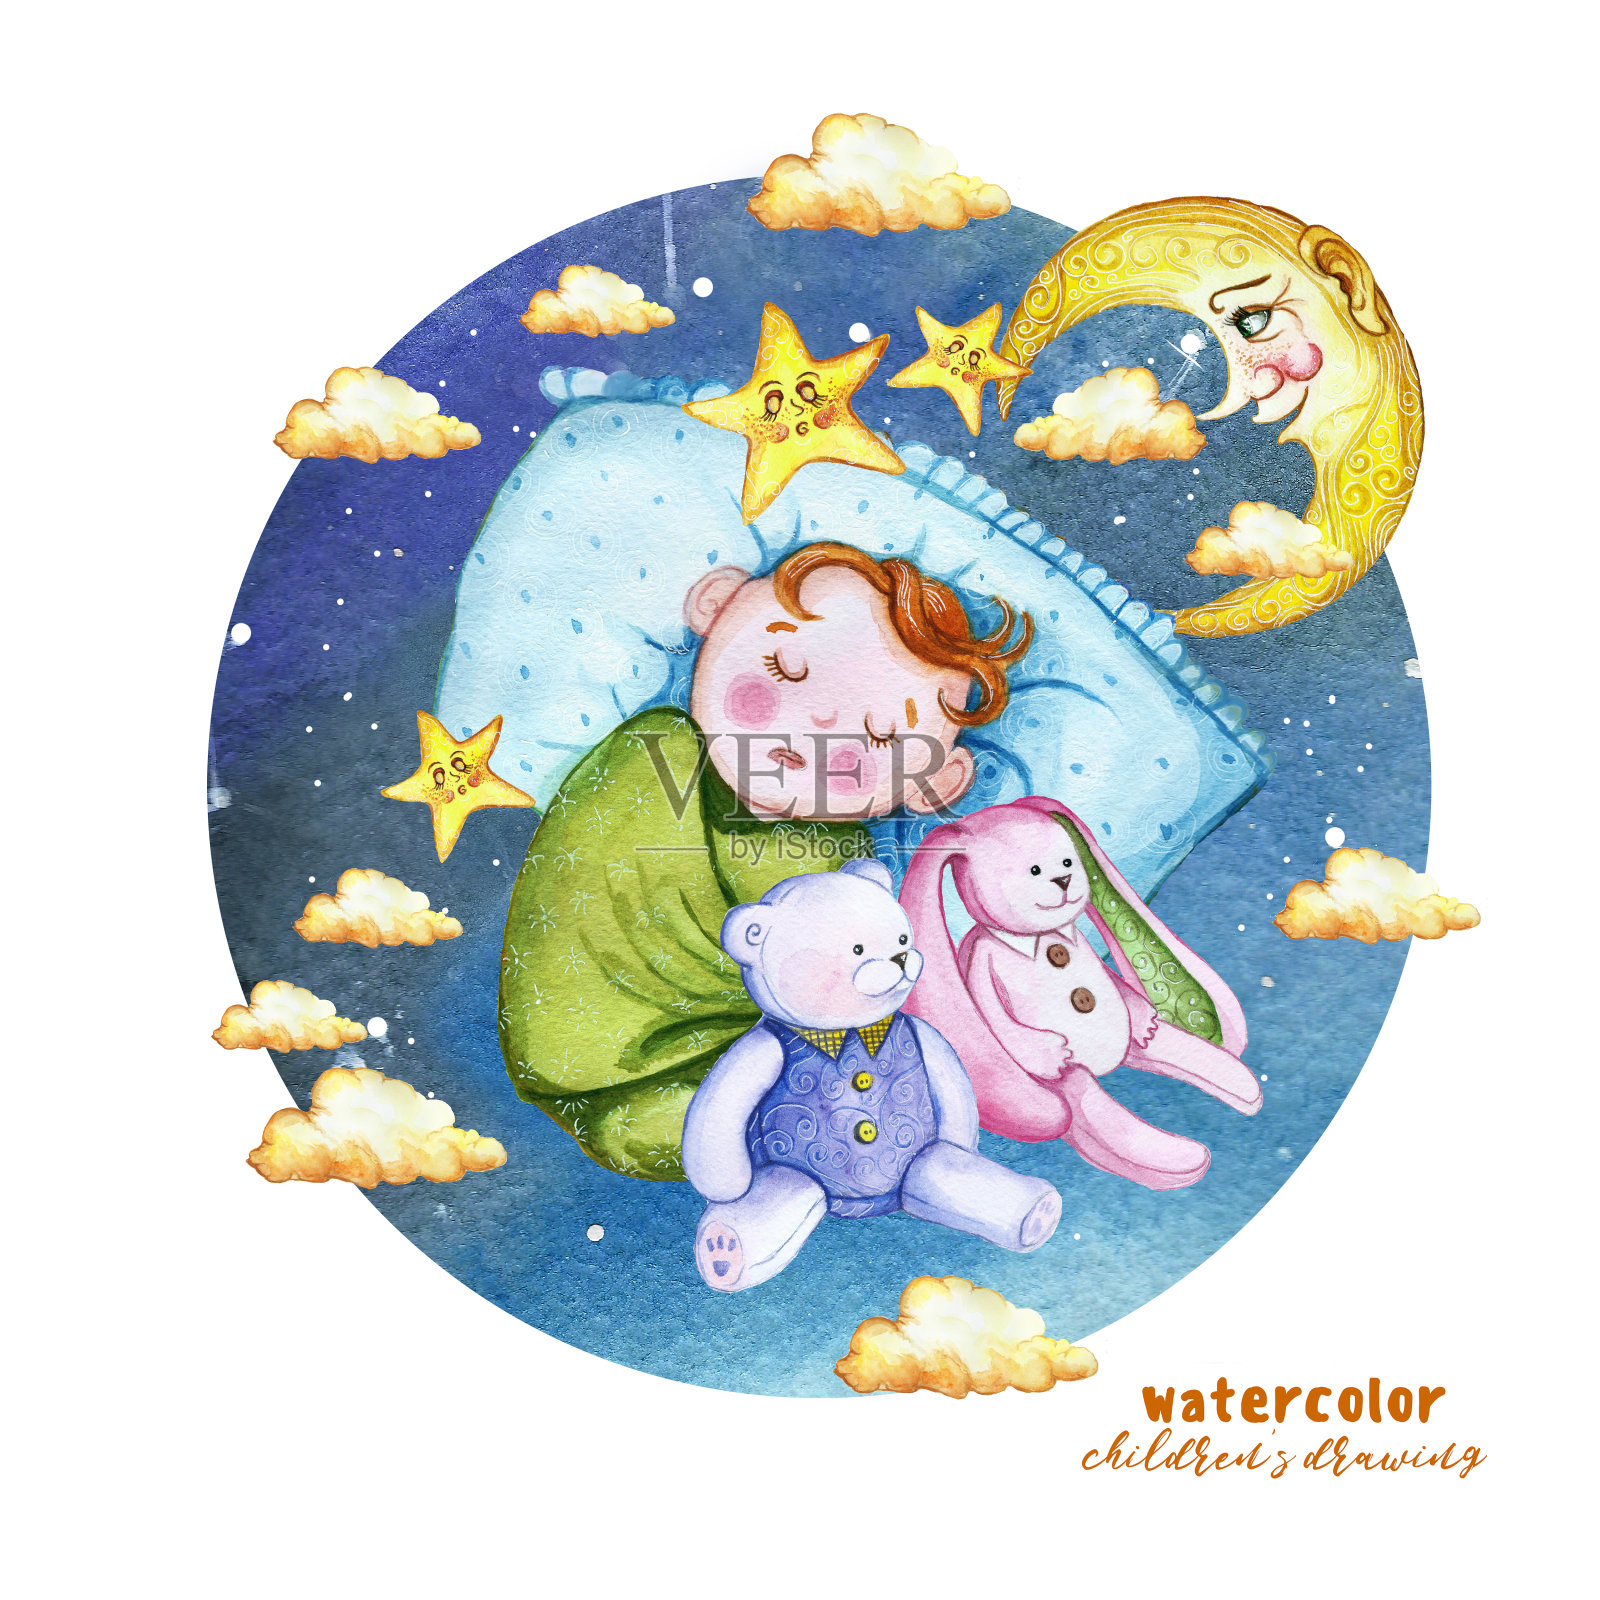 水彩画打印的儿童插画，一个孩子在尿布，婴儿是睡在枕头上，周围的星星和云彩，坐在旁边的一个柔软的玩具兔和熊，毛绒玩具为装饰和设计的儿童插画图片素材